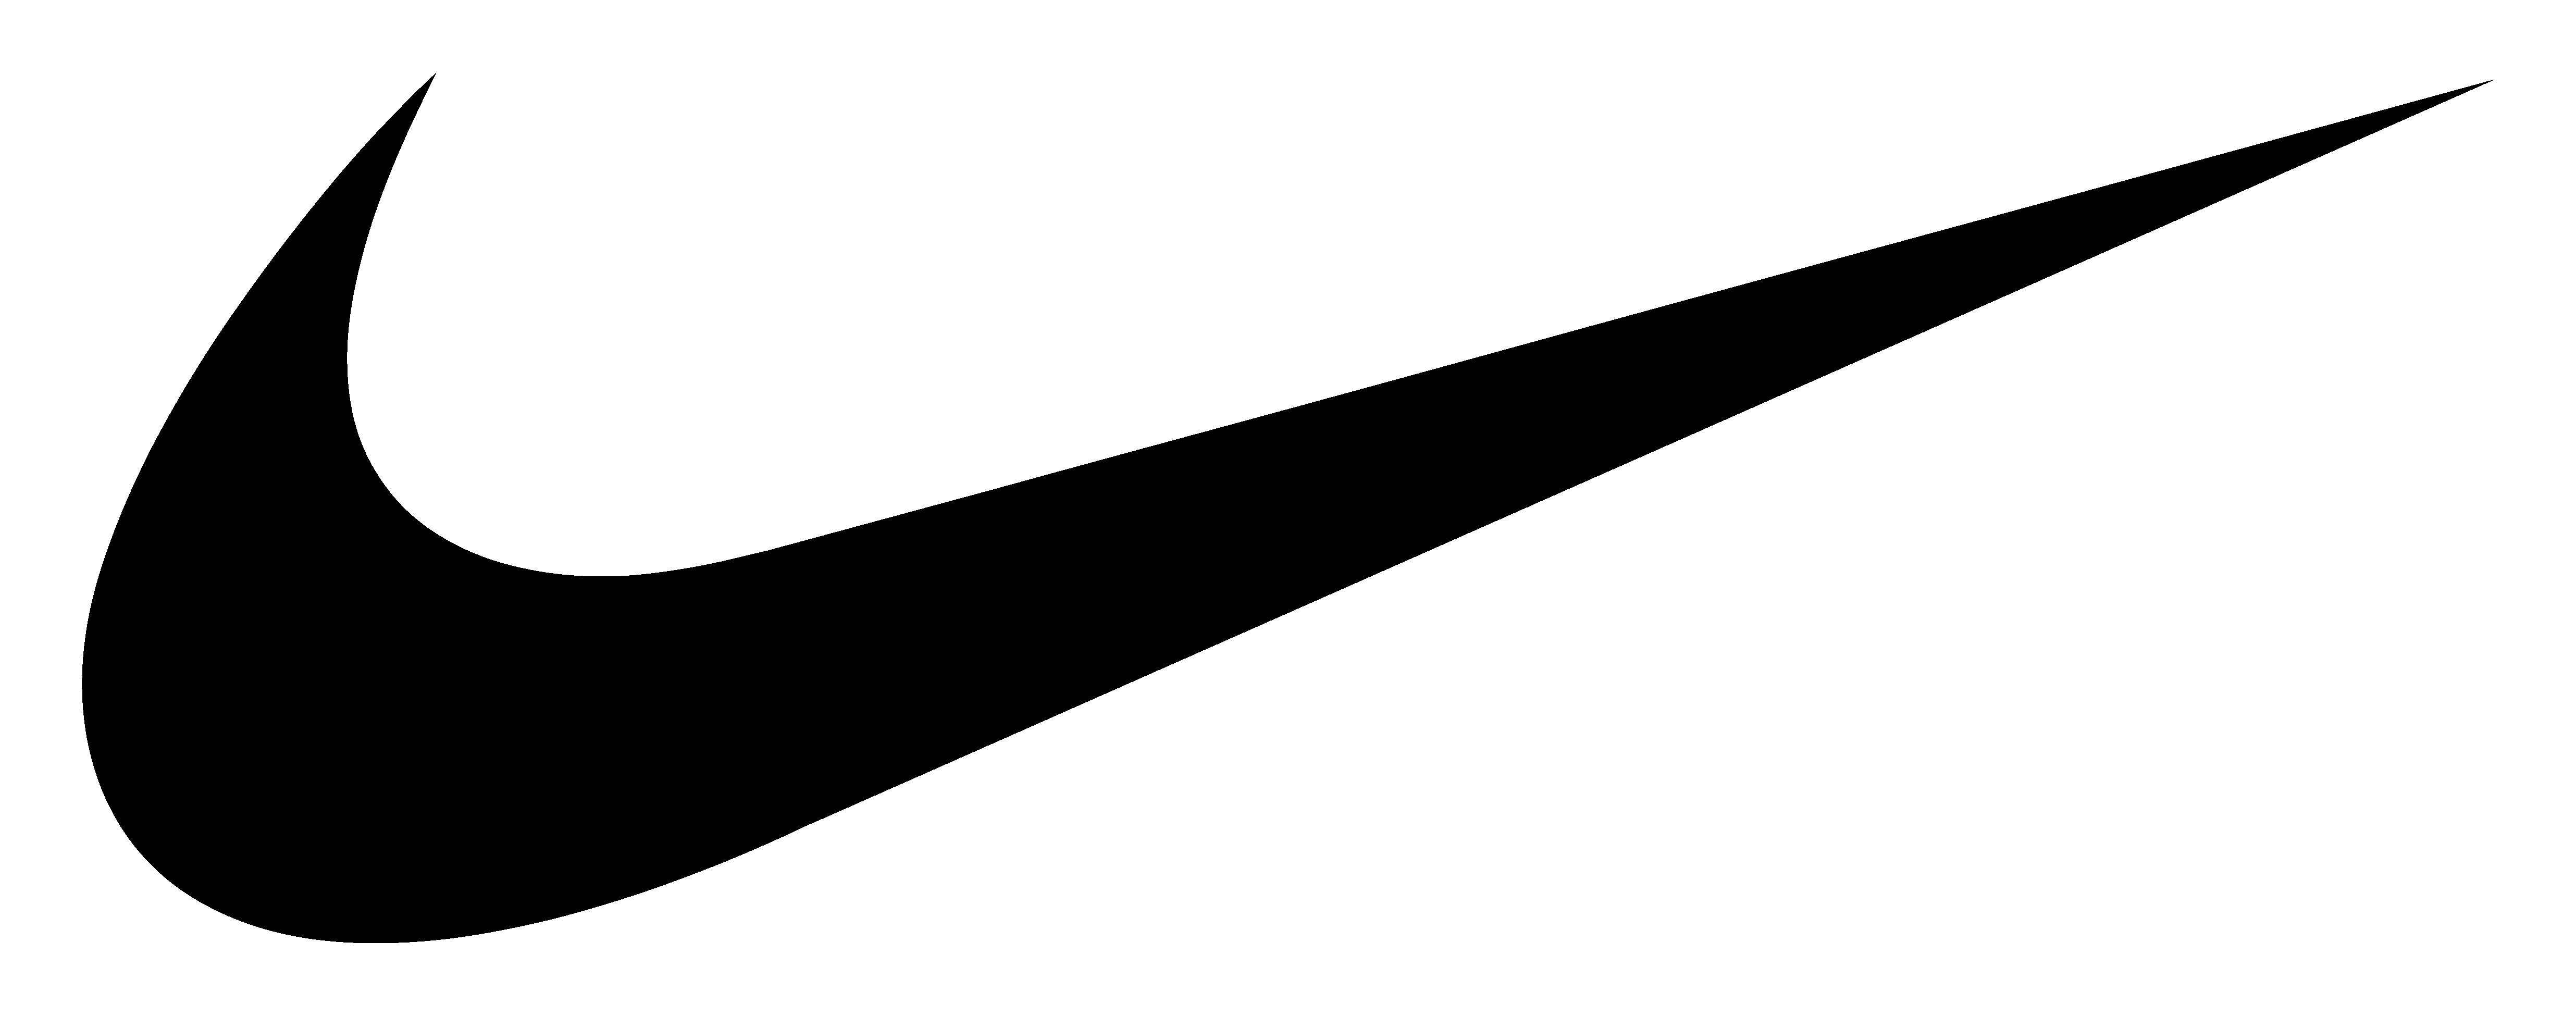 nike-logo-png-black-icon-white-background-large